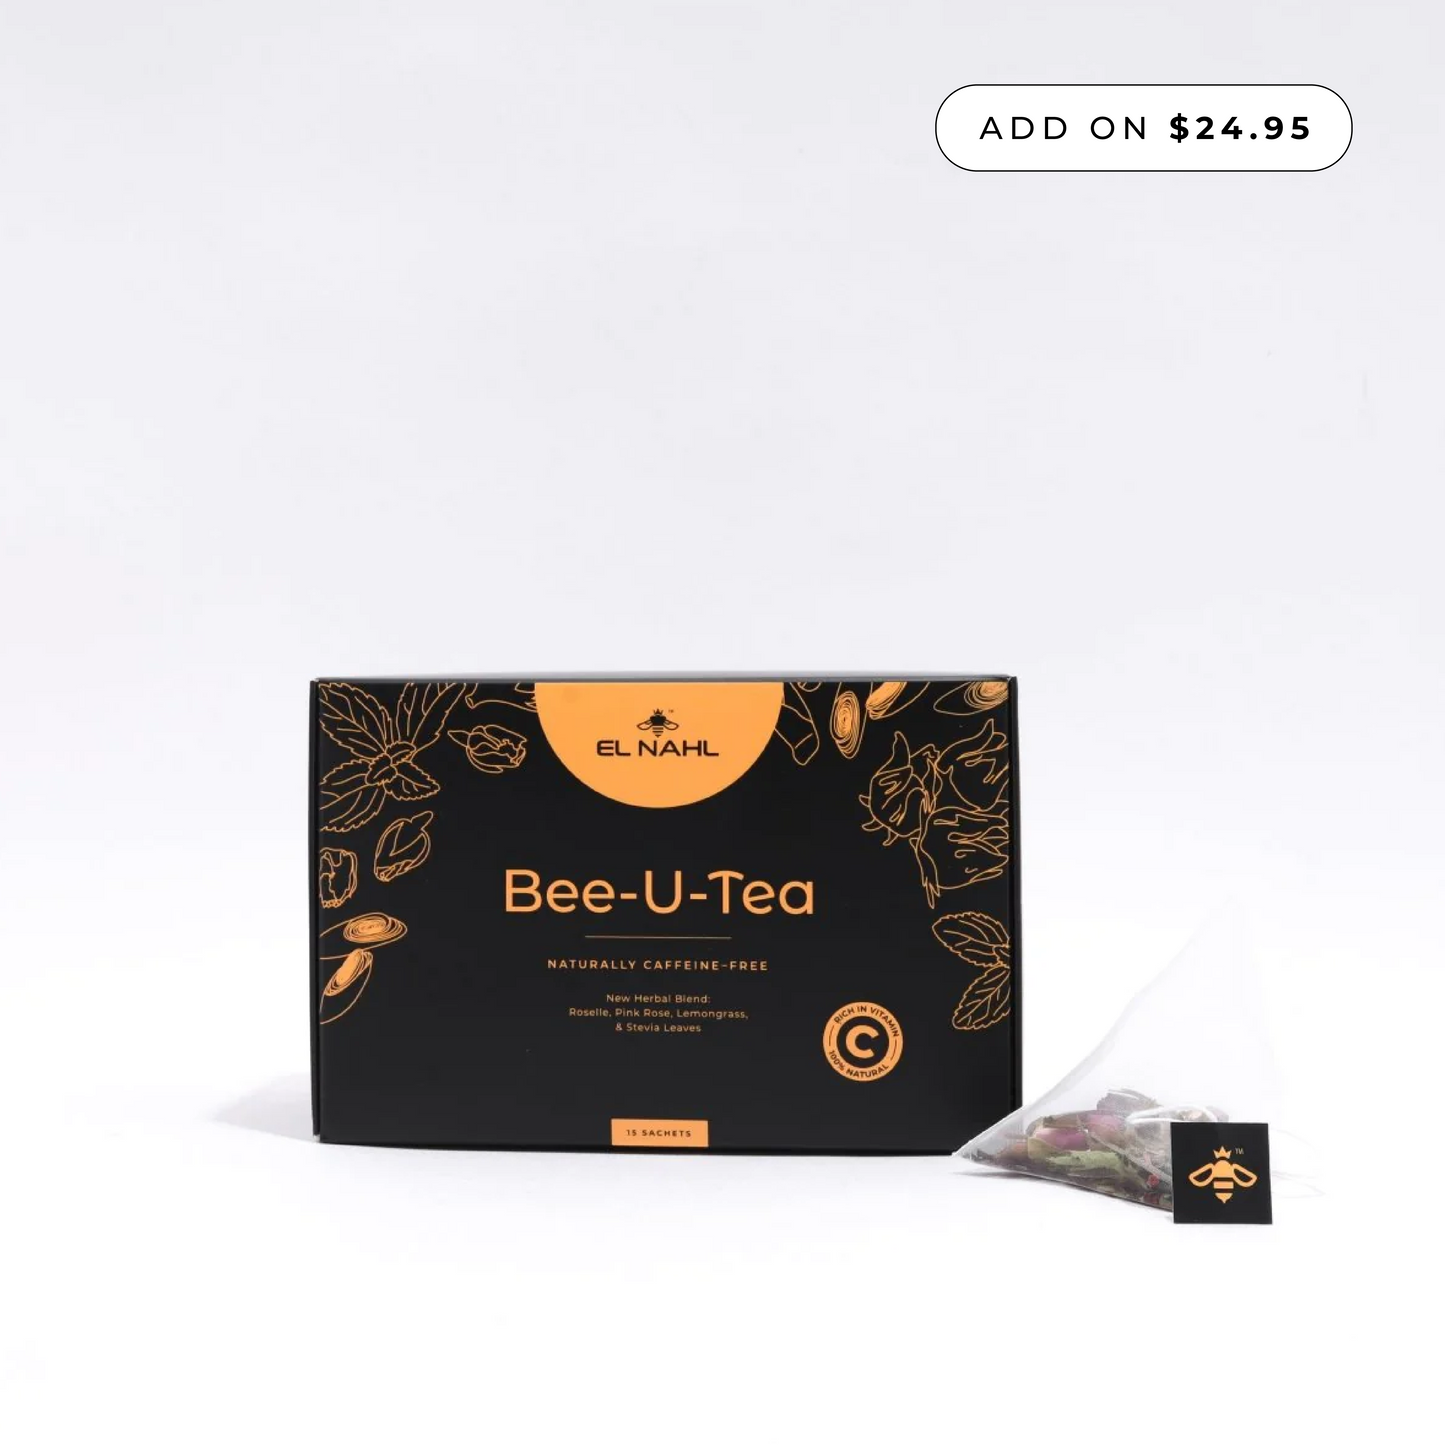 Bee-U-Tea